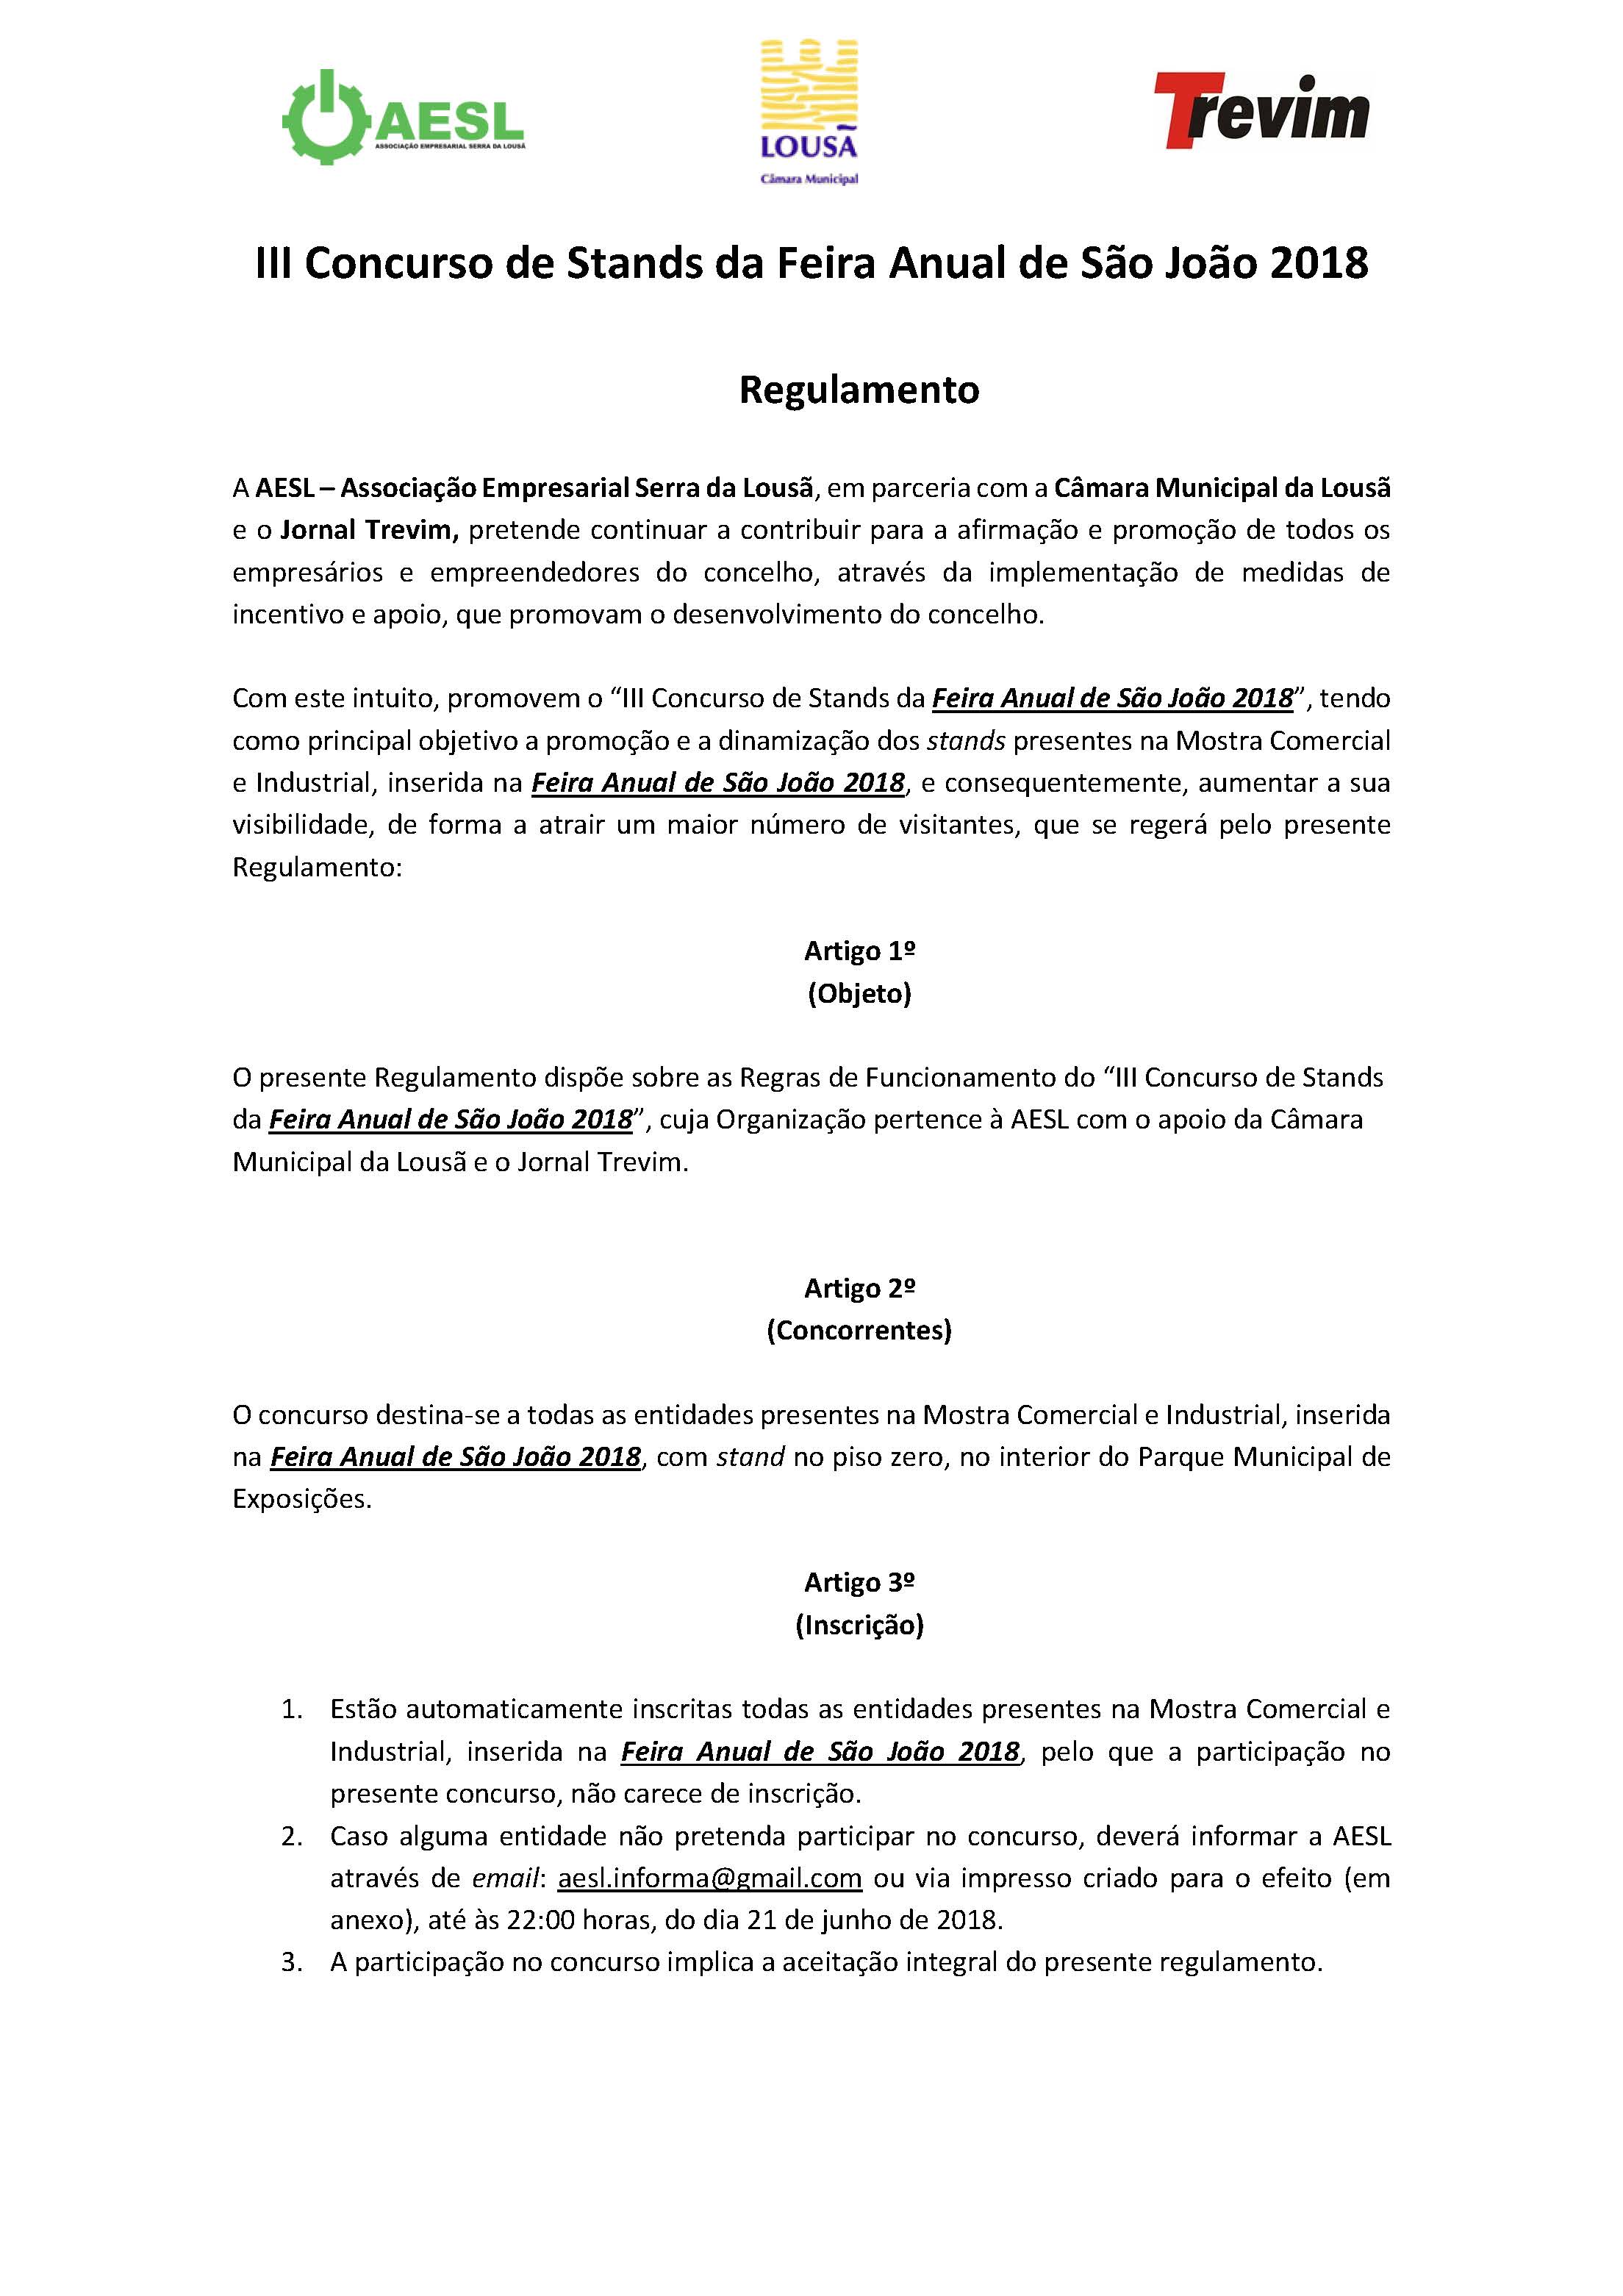 Regulamento - III Concurso de Stands da Feira Anual de São João 2018_Página_1